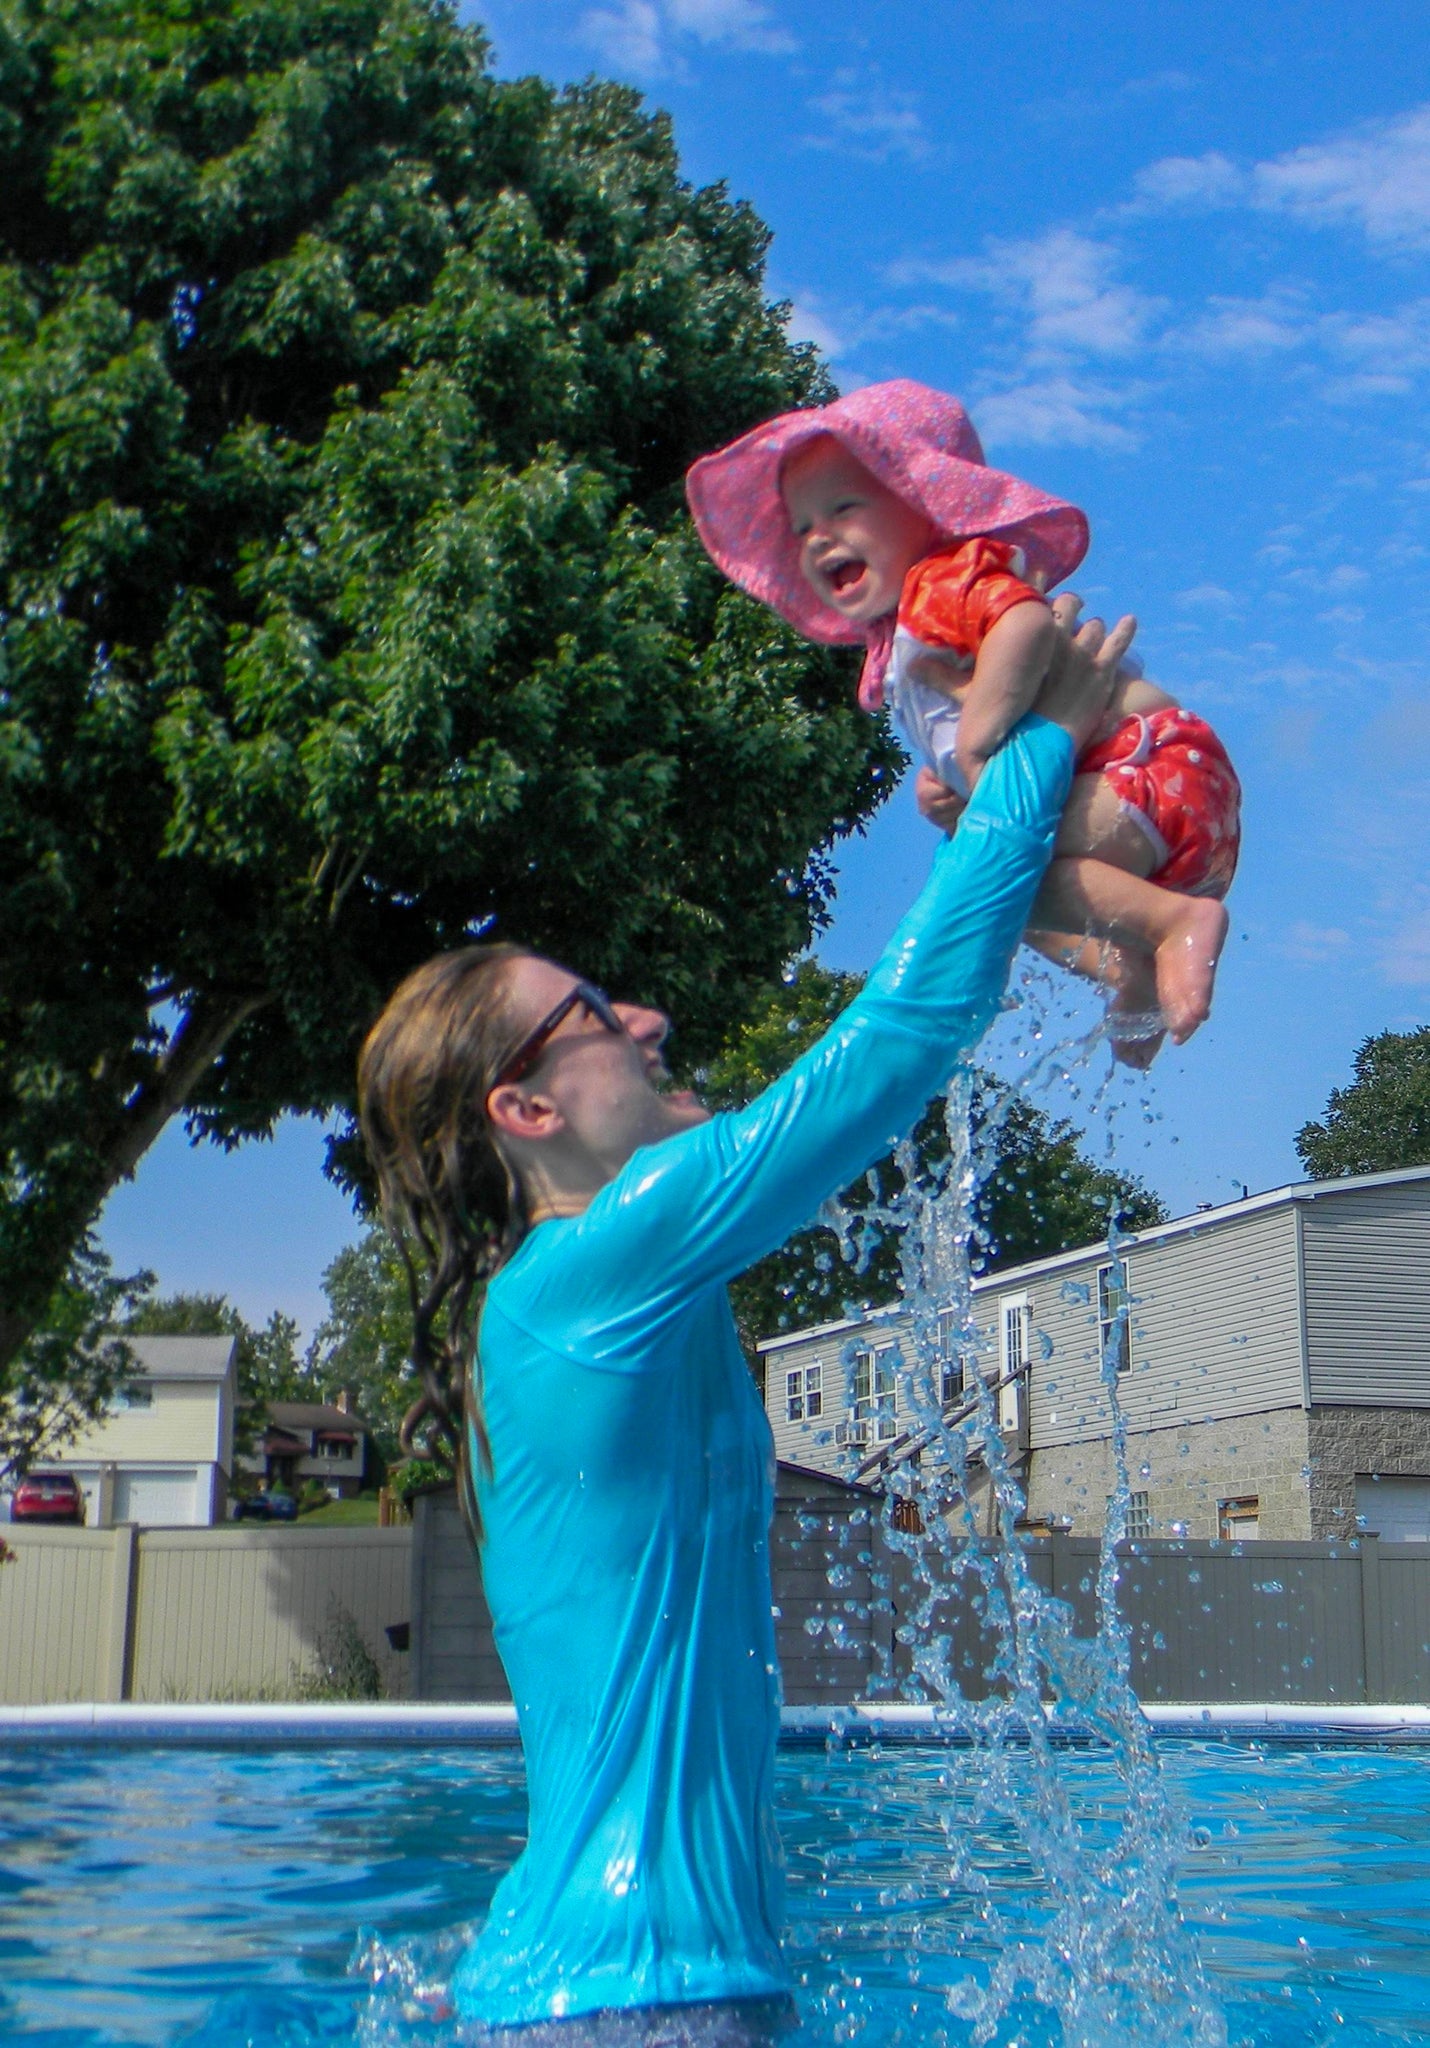 Joyful mother bonding with baby in pool